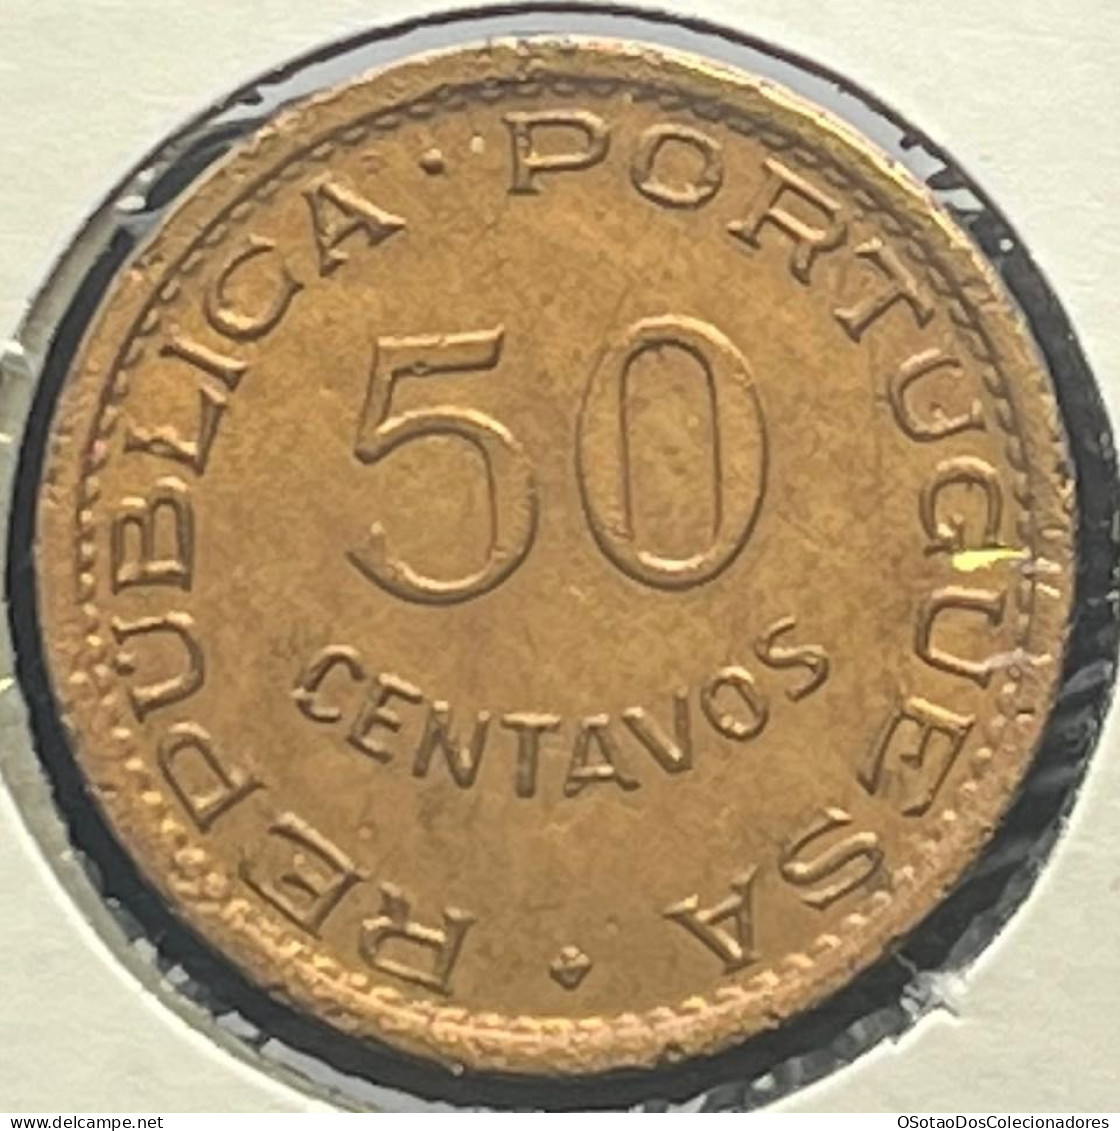 Moeda Moçambique Portugal - Coin Moçambique - 50 Centavos 1974 - MBC ++ - Mozambique